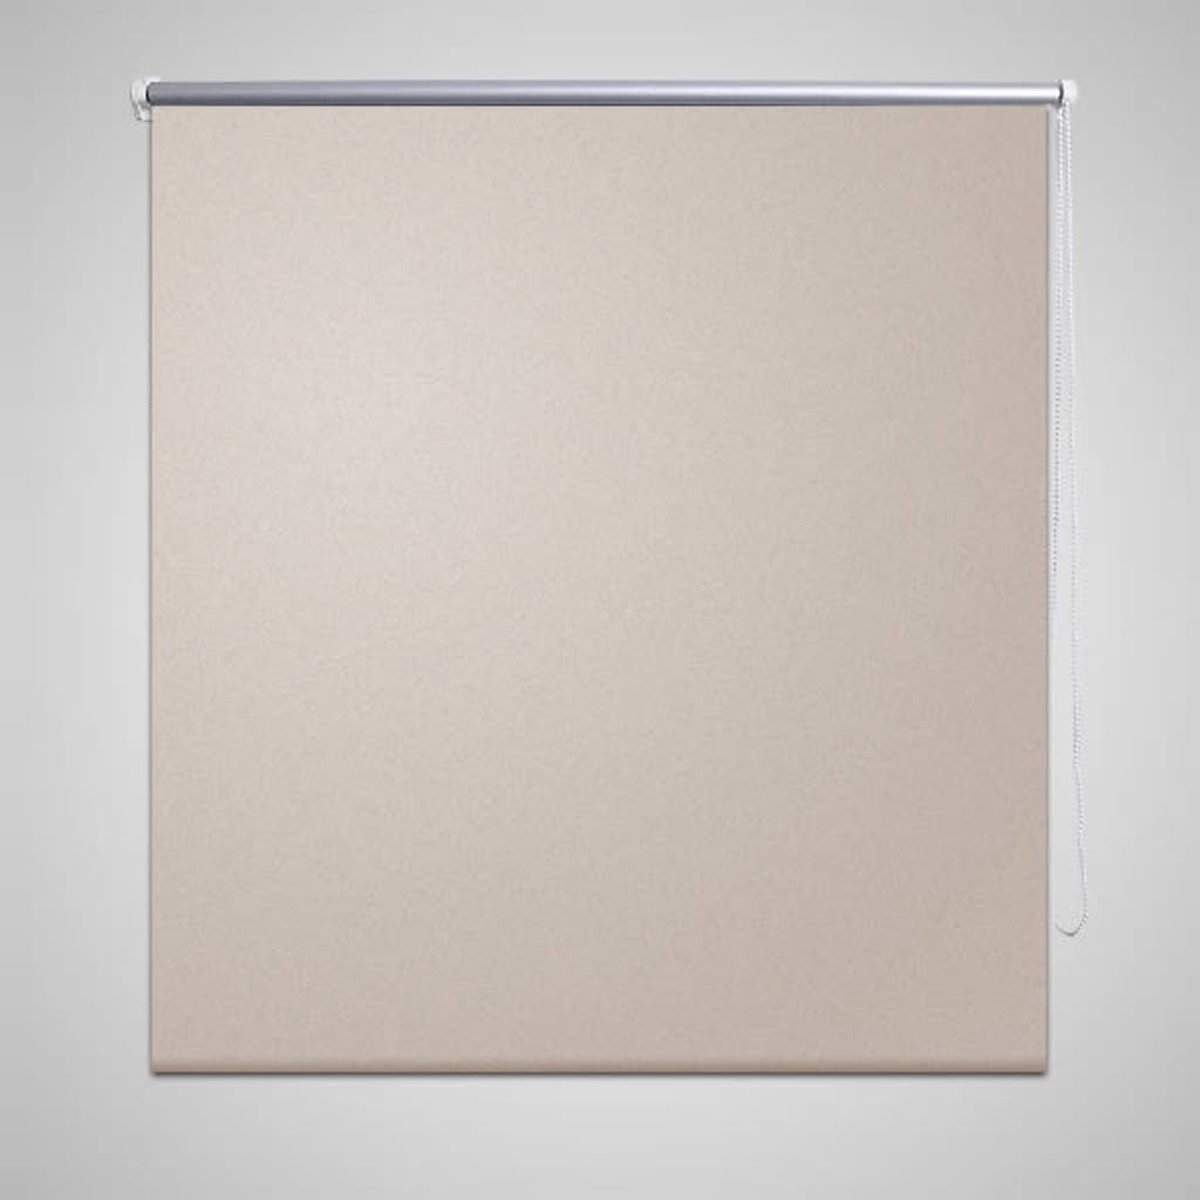 VidaLife Rolgordijn verduisterend 120 x 175 cm beige